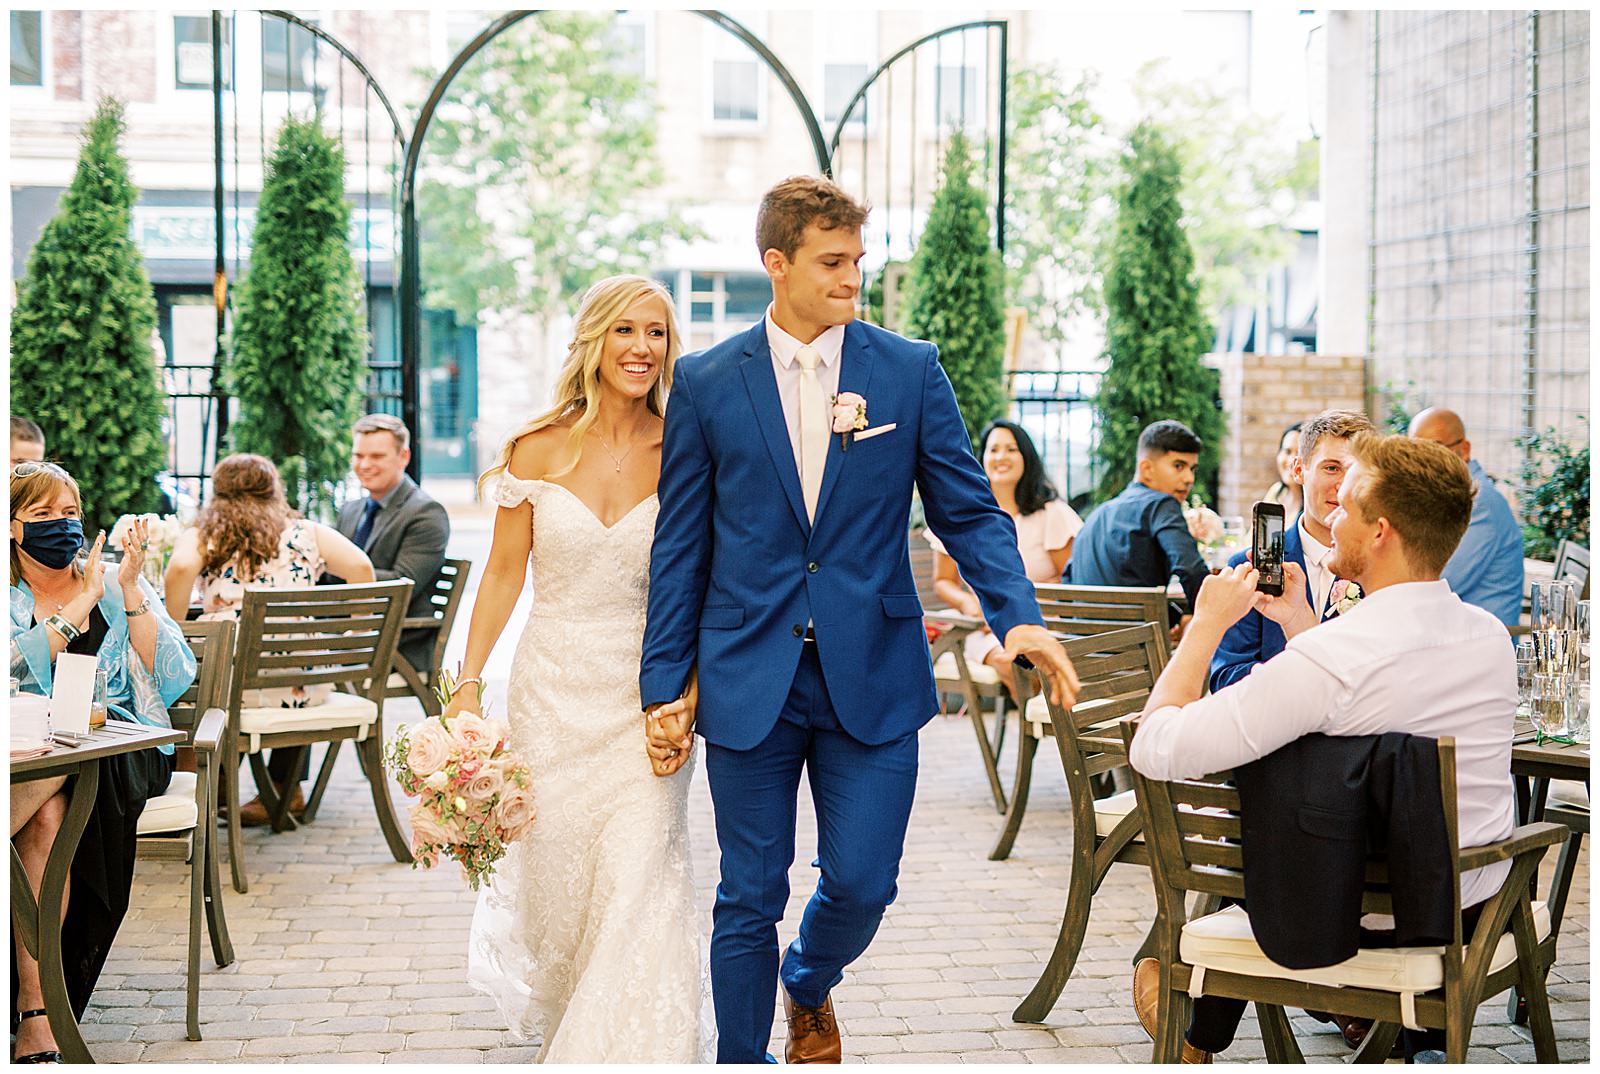 bride and groom enter esquire hotel outdoor patio wedding reception